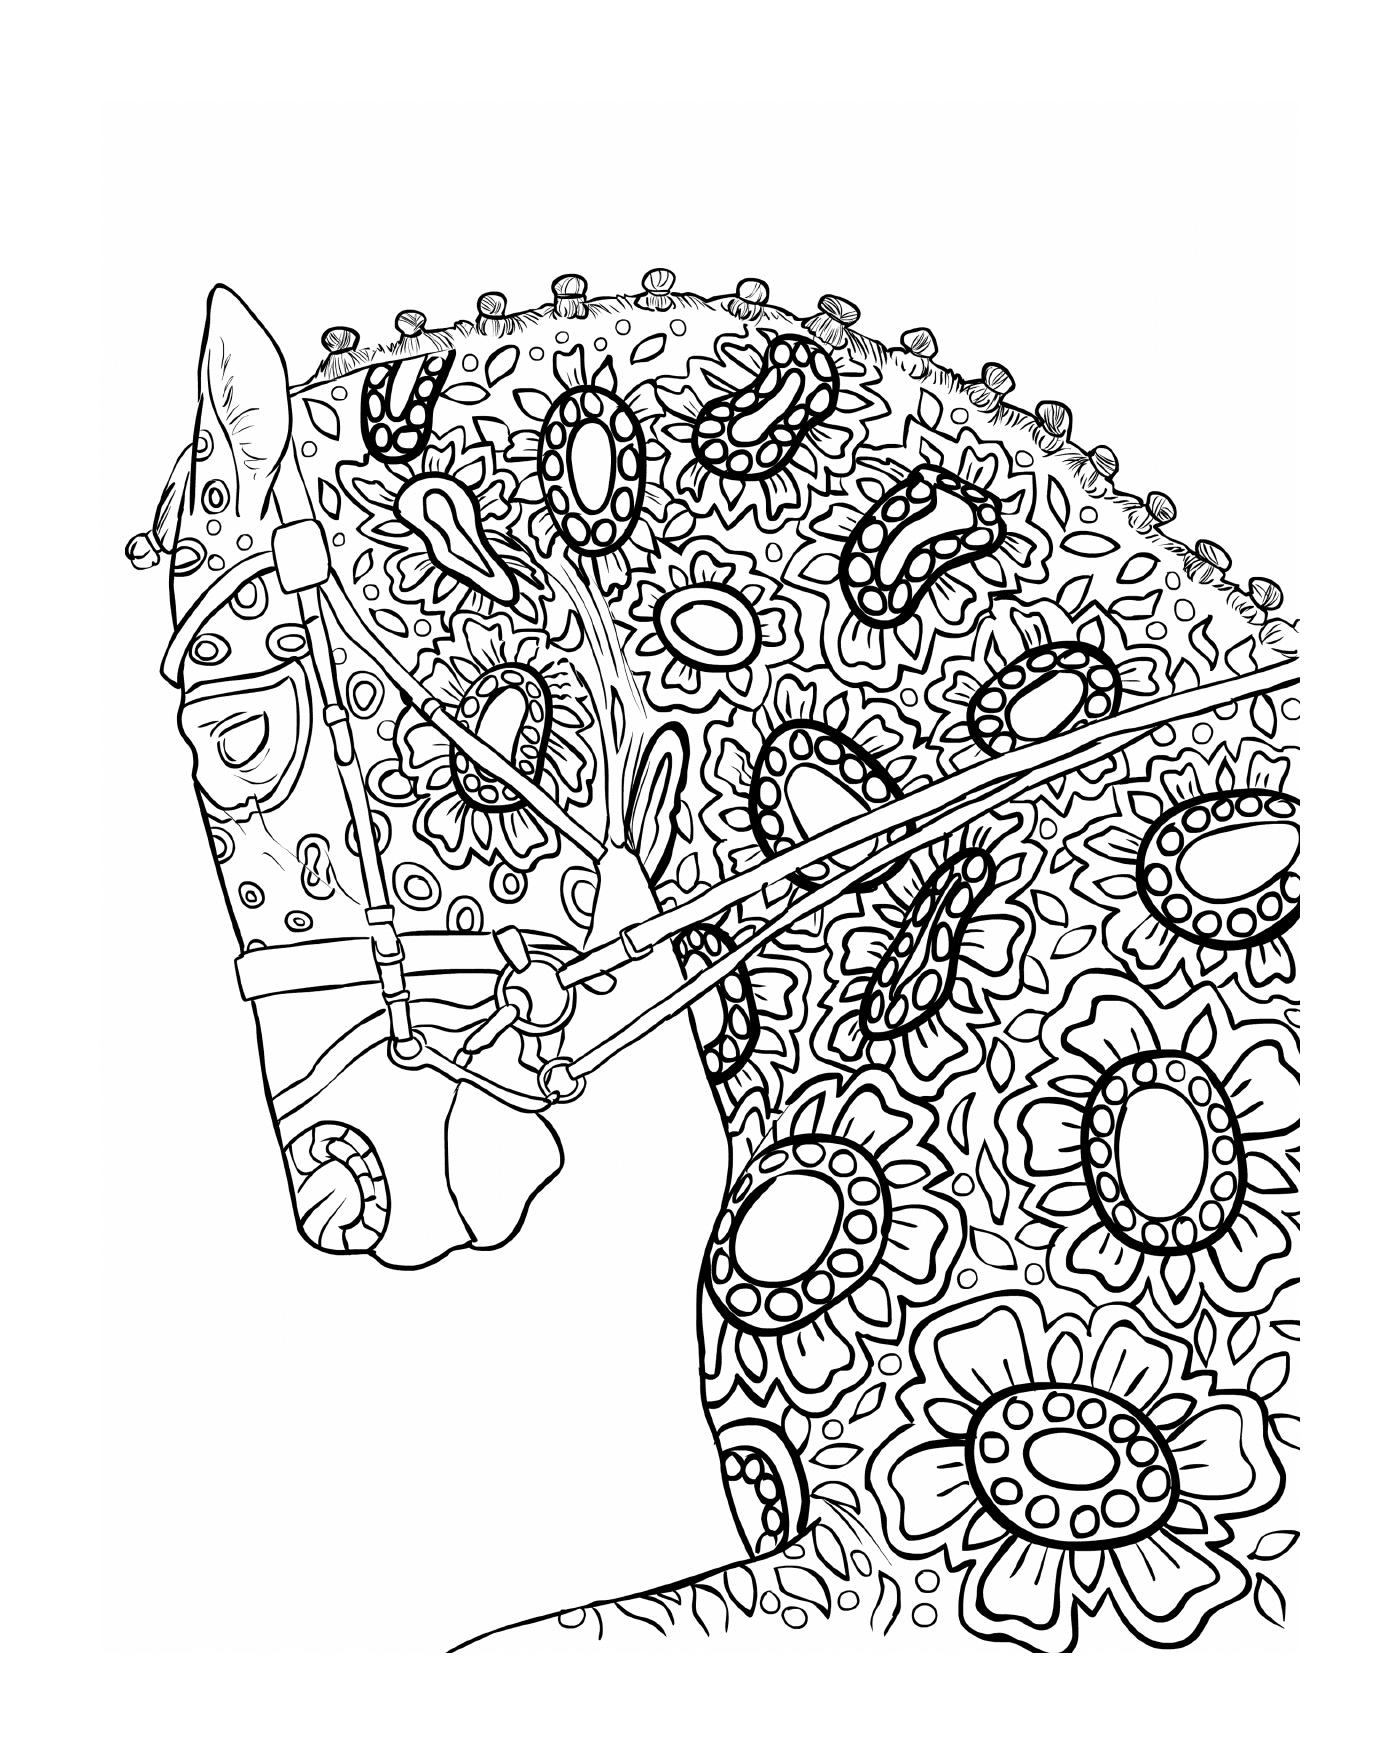  马头头有花纹 